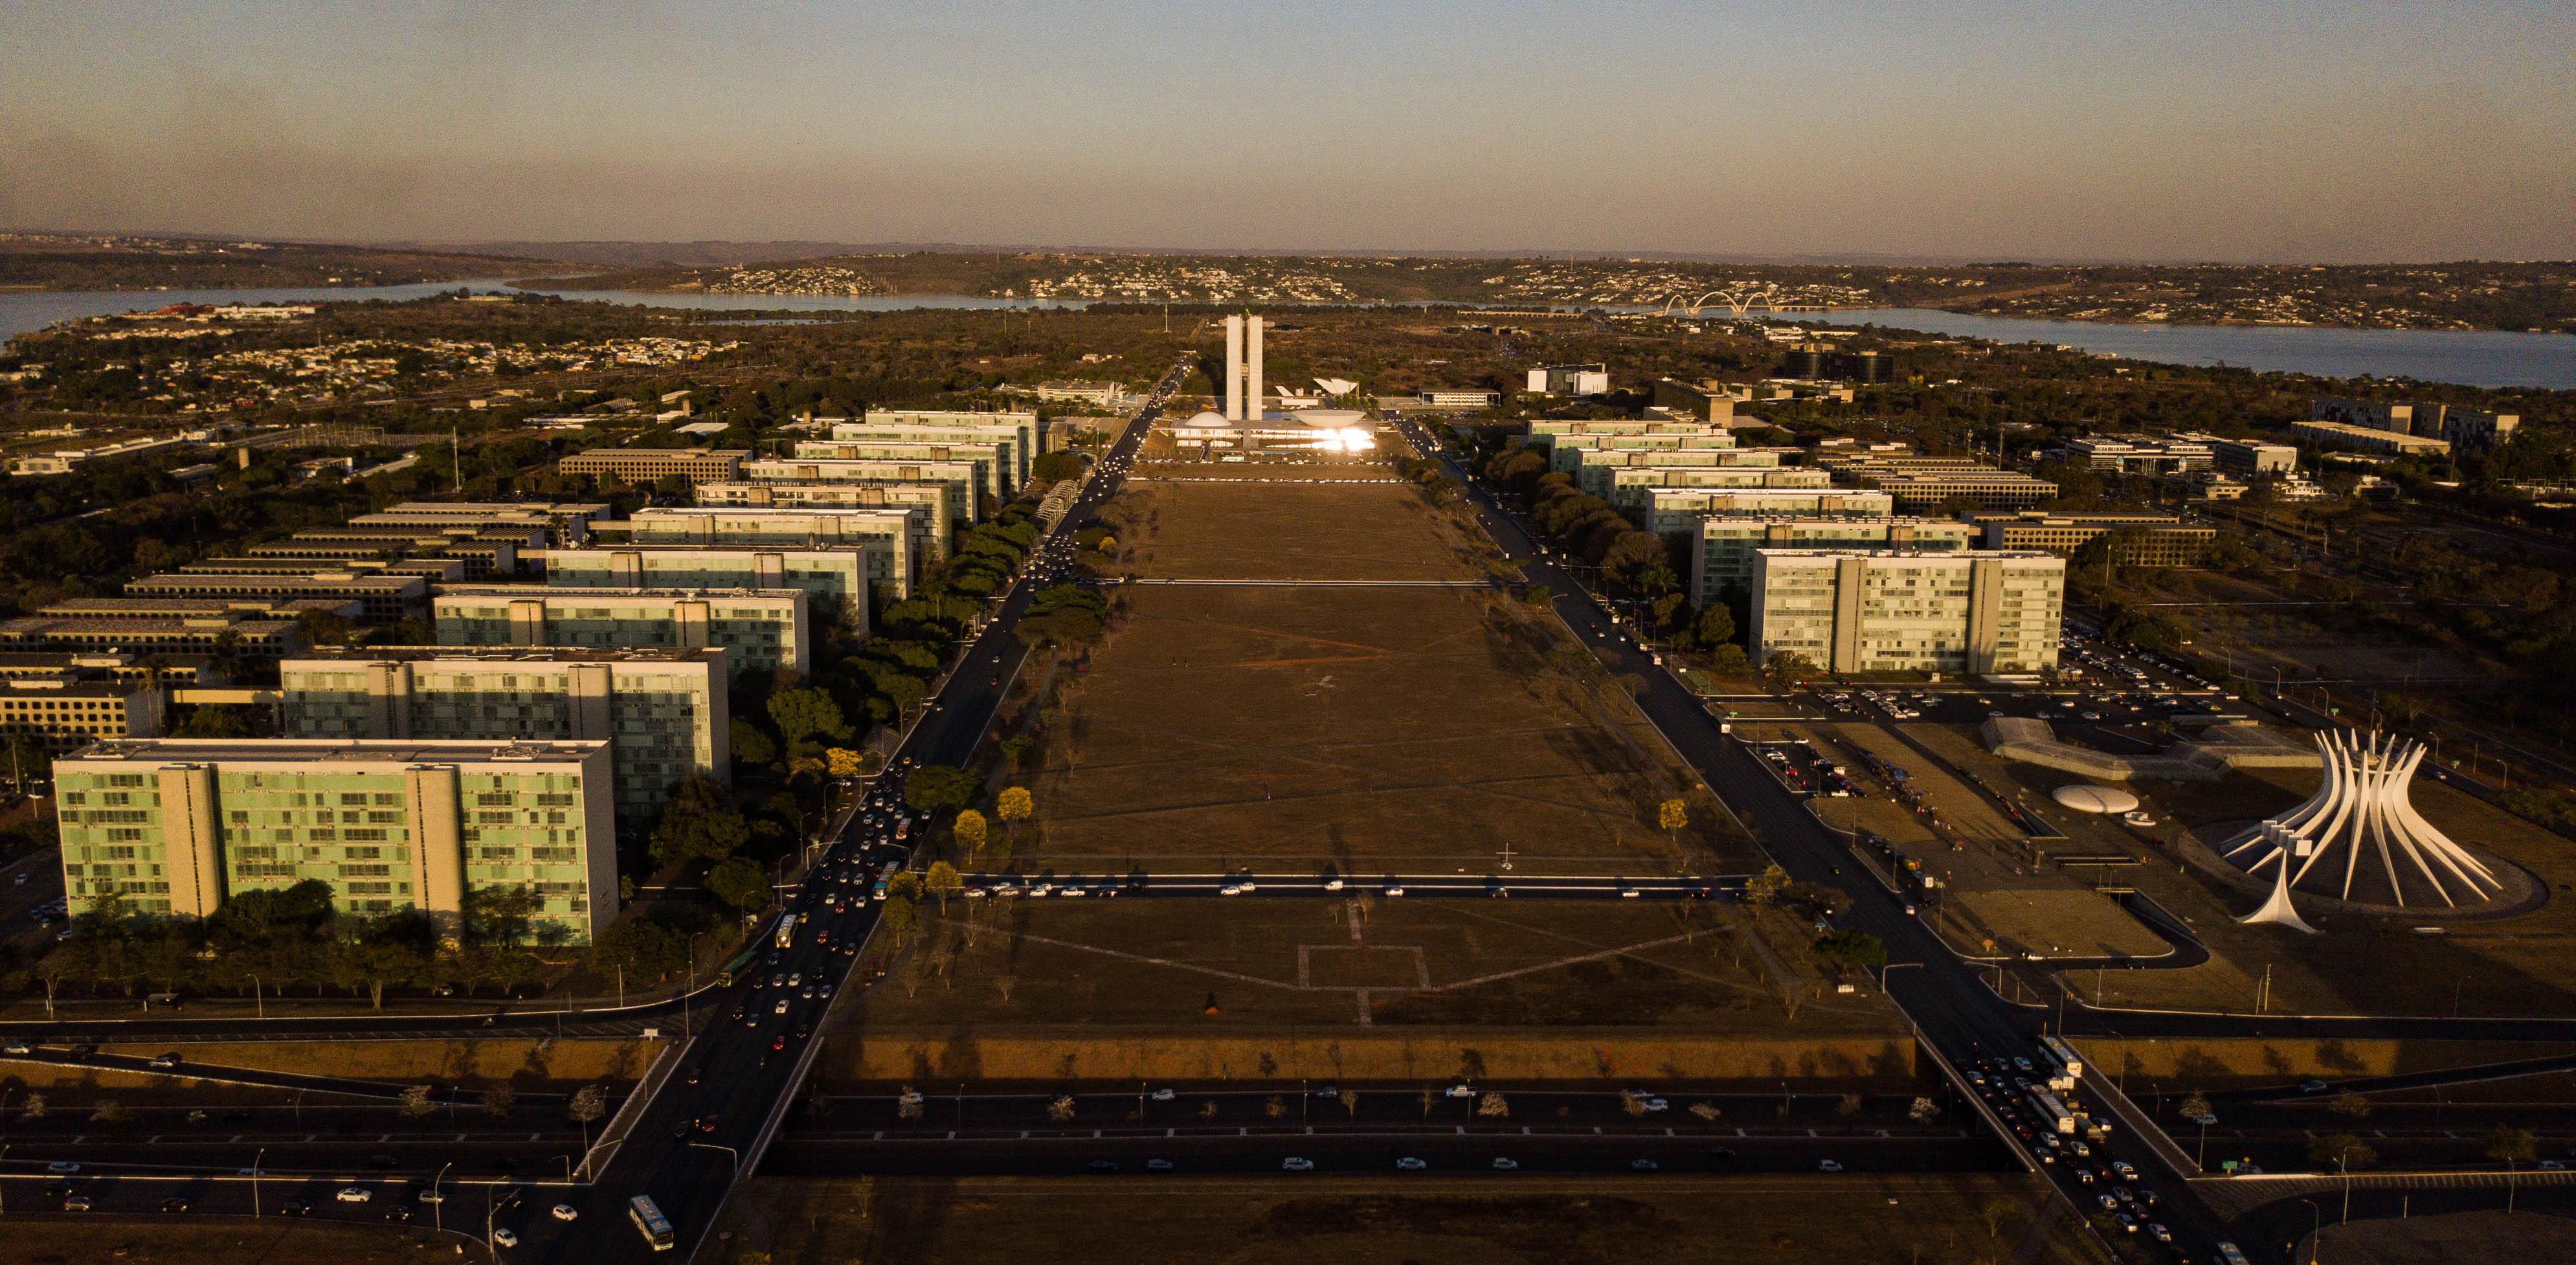 Atualmente, cerca de 40 mil funcionários públicos trabalham nos prédios da Esplanada dos Ministérios, em Brasília, projetados pelo arquiteto Oscar Niemeyer